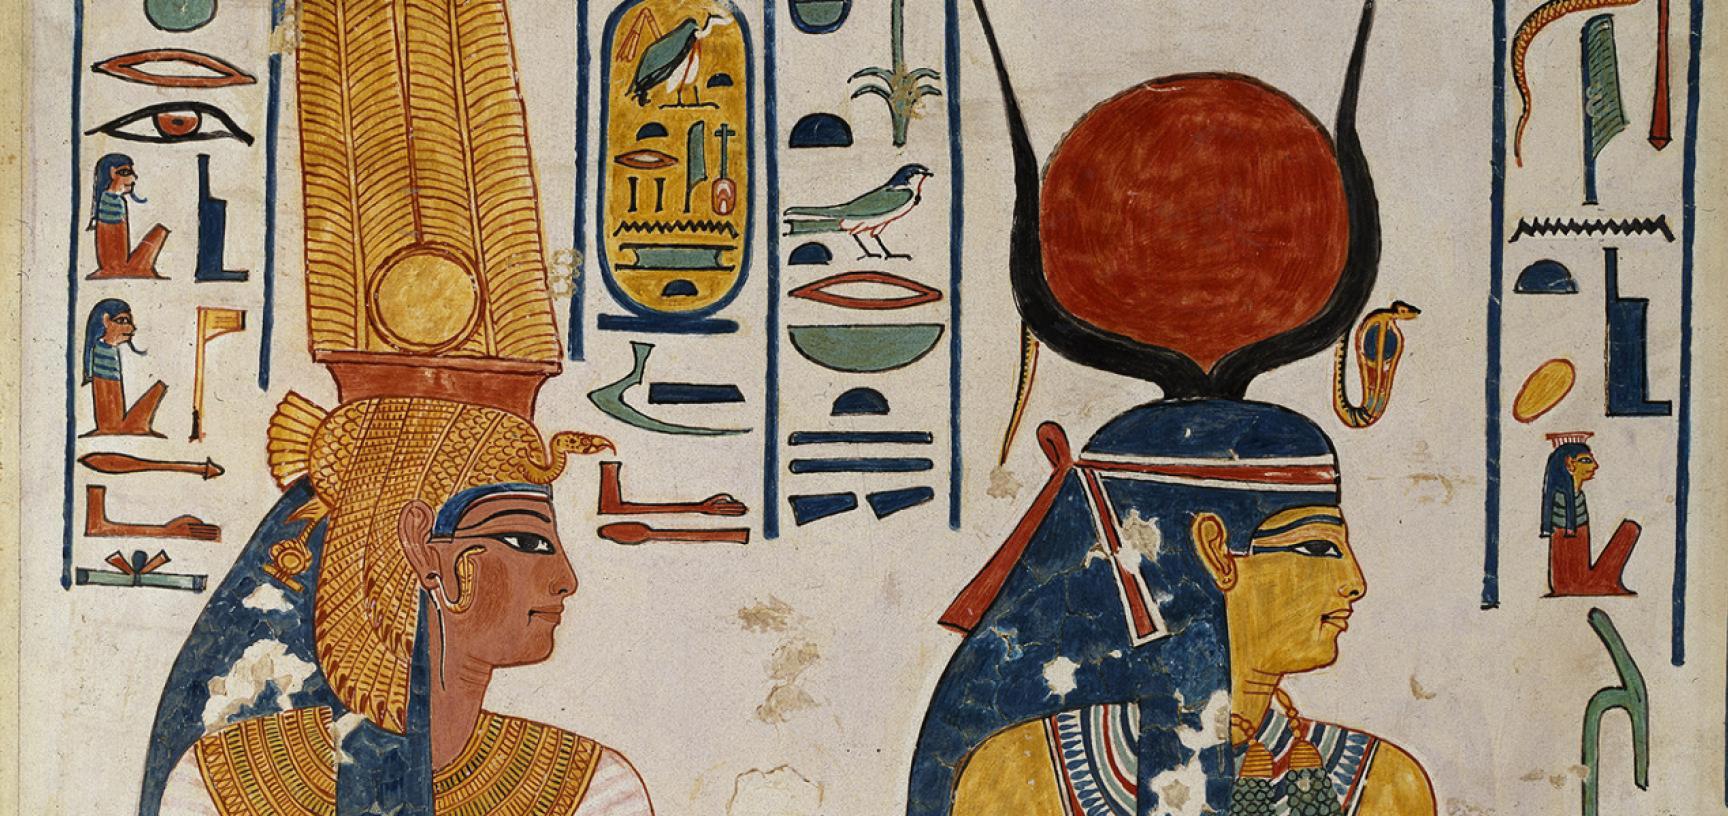 ANCIENT EGYPT, MYTHOLOGY, EGYPTIAN MYTHOLOGY, ART, ANCIENT ART, EGYPT